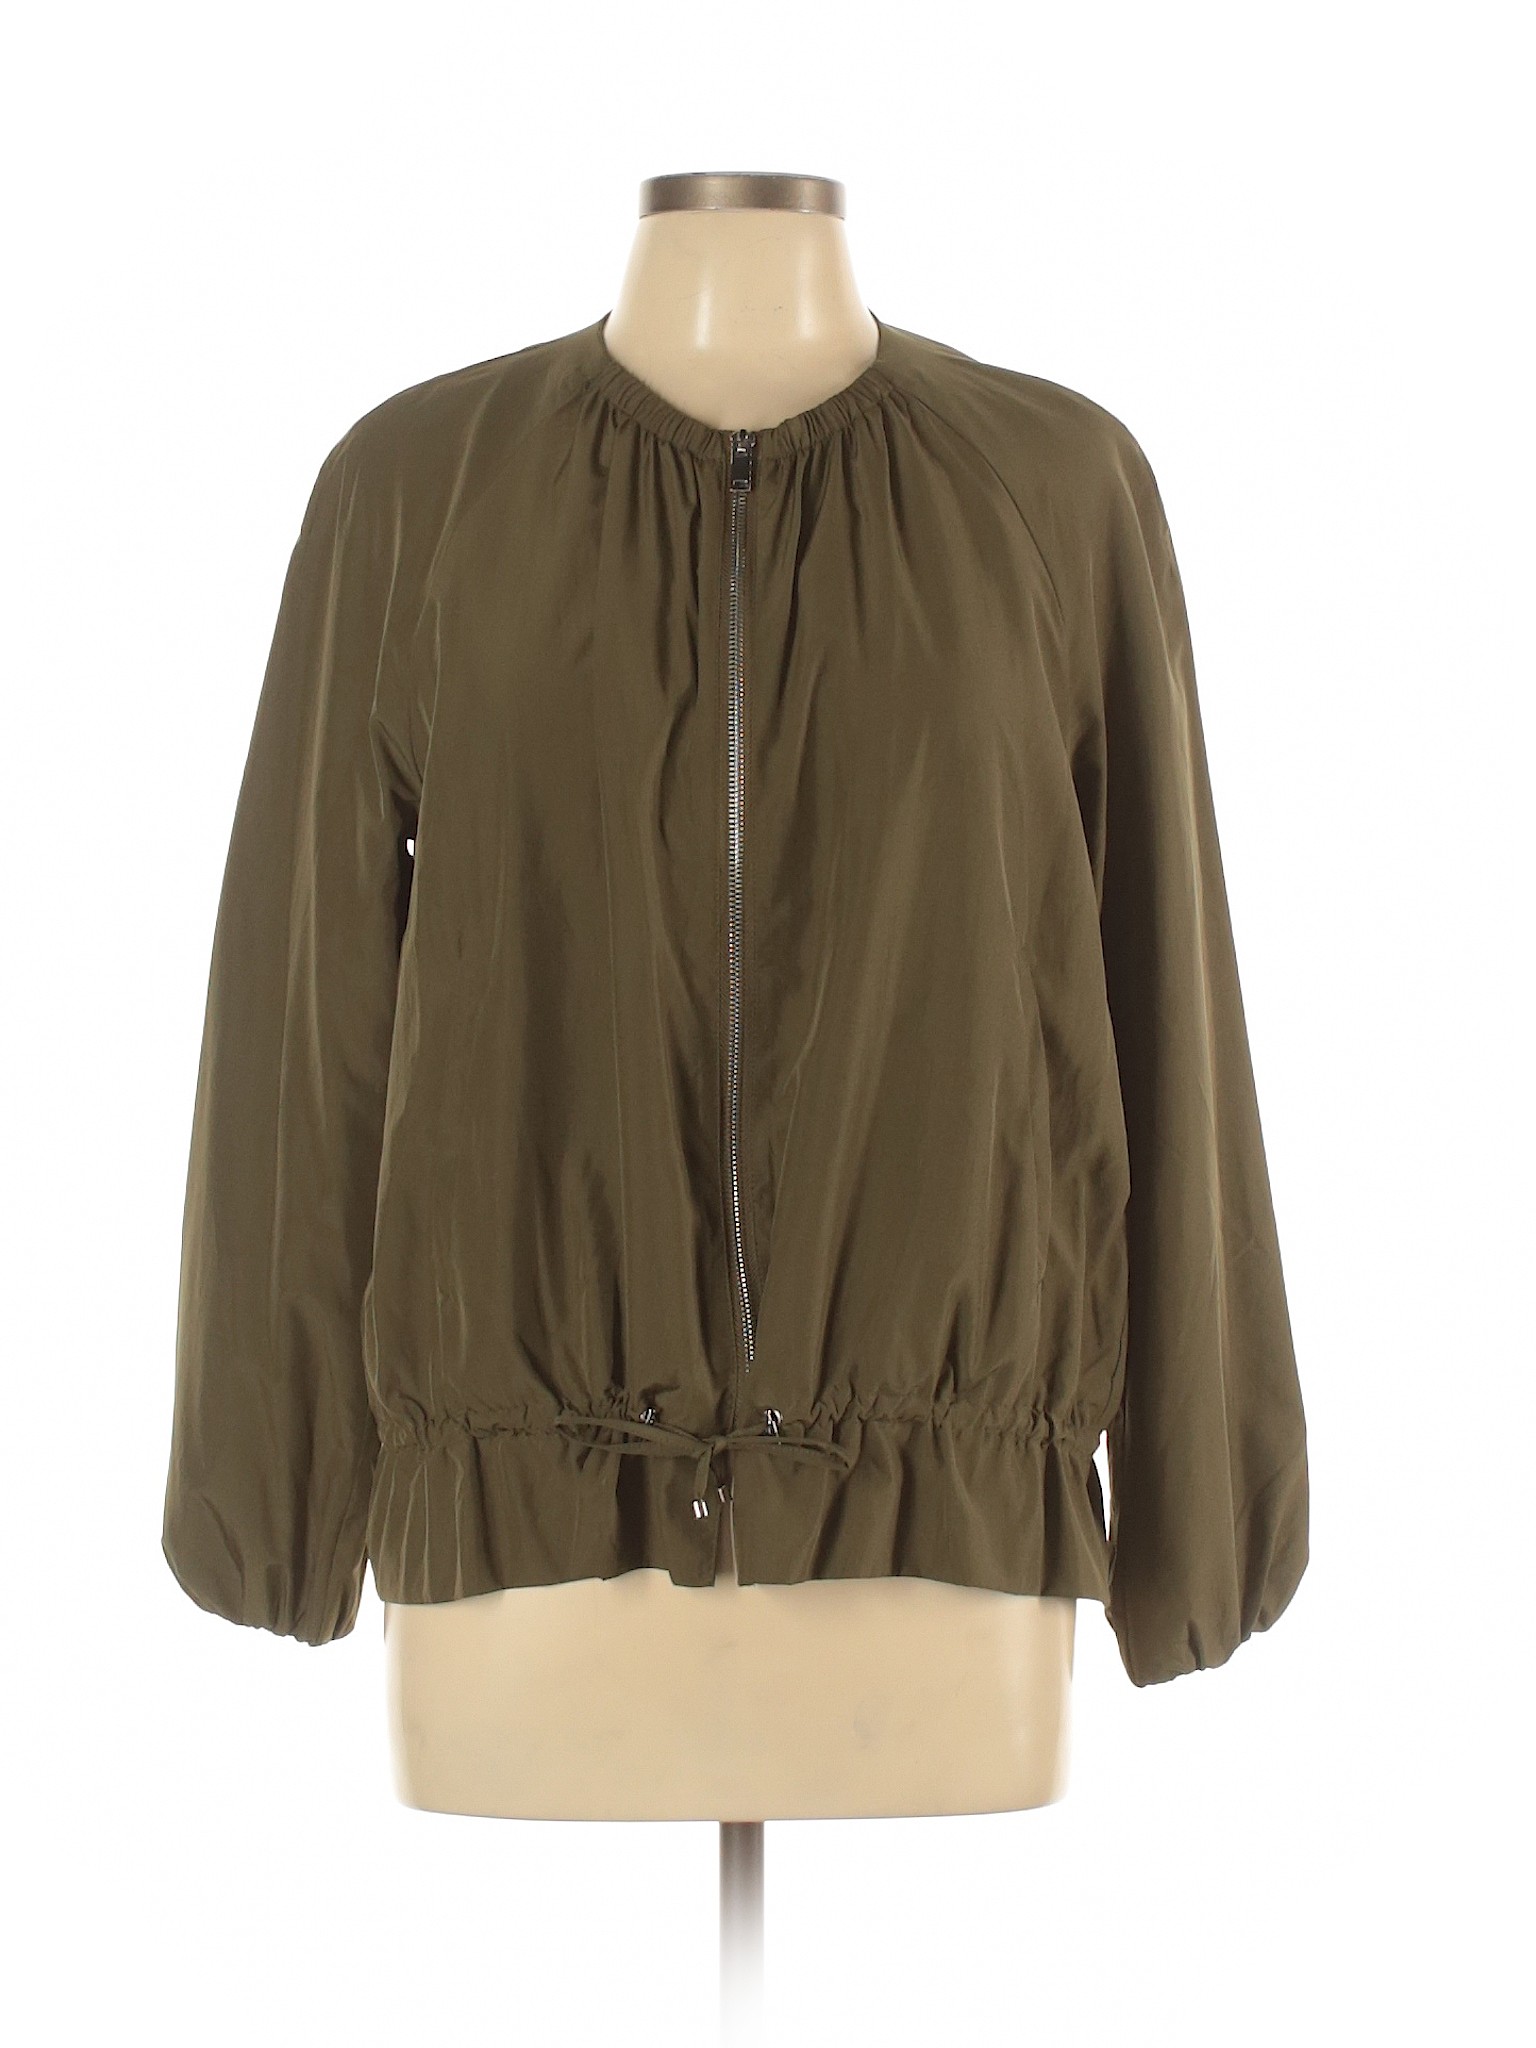 Zara Basic Women Green Jacket L | eBay